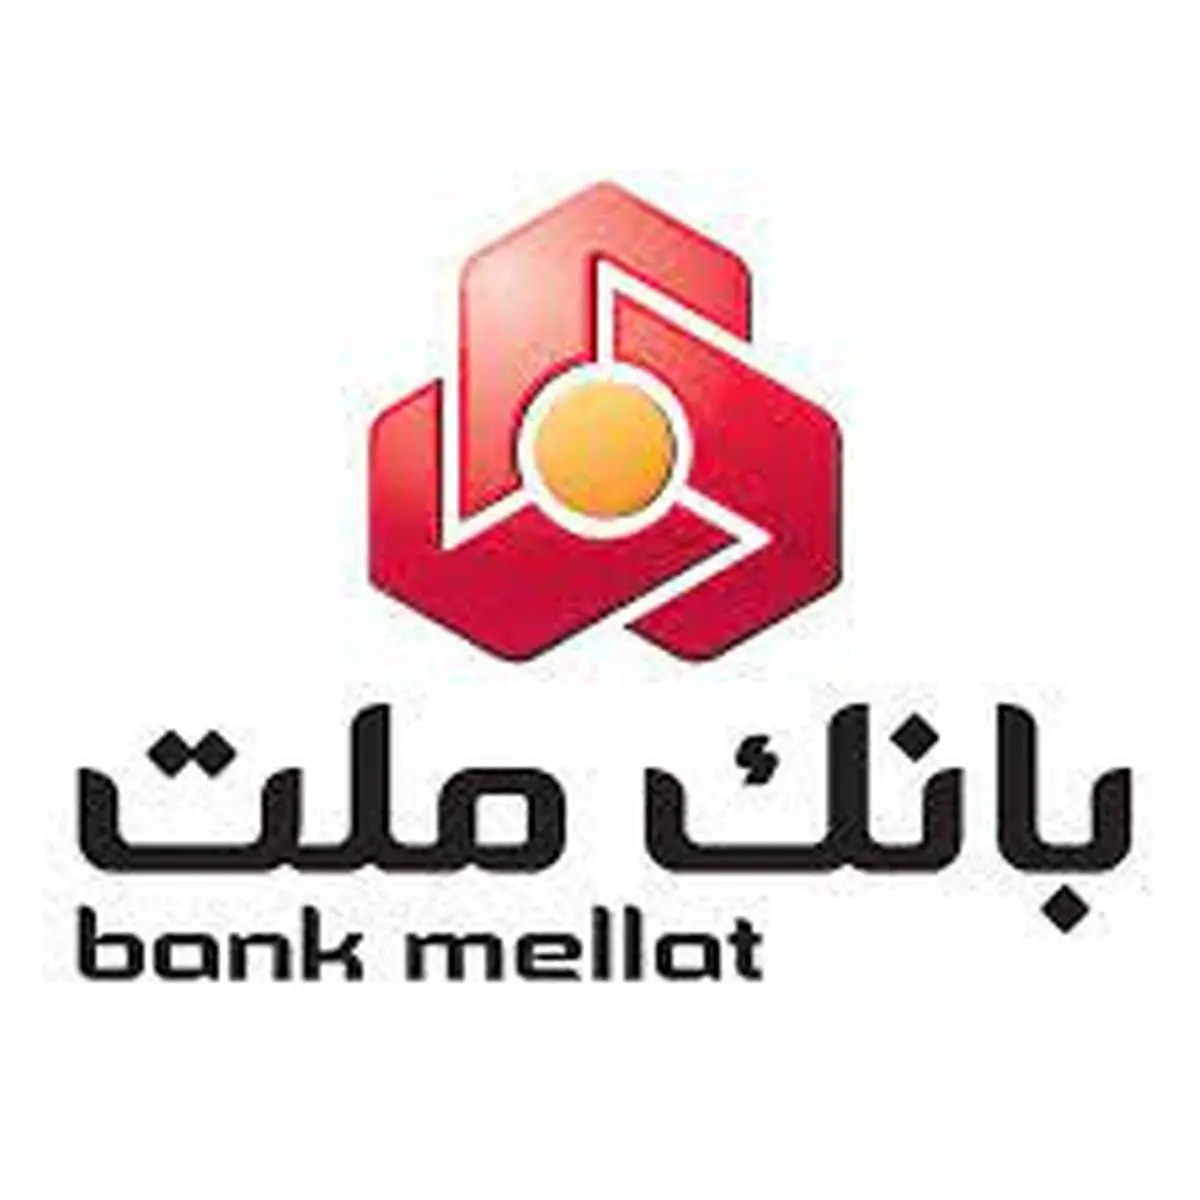 قدردانی رییس کمیته امداد امام خمینی(ره) از اقدامات حمایتی بانک ملت

